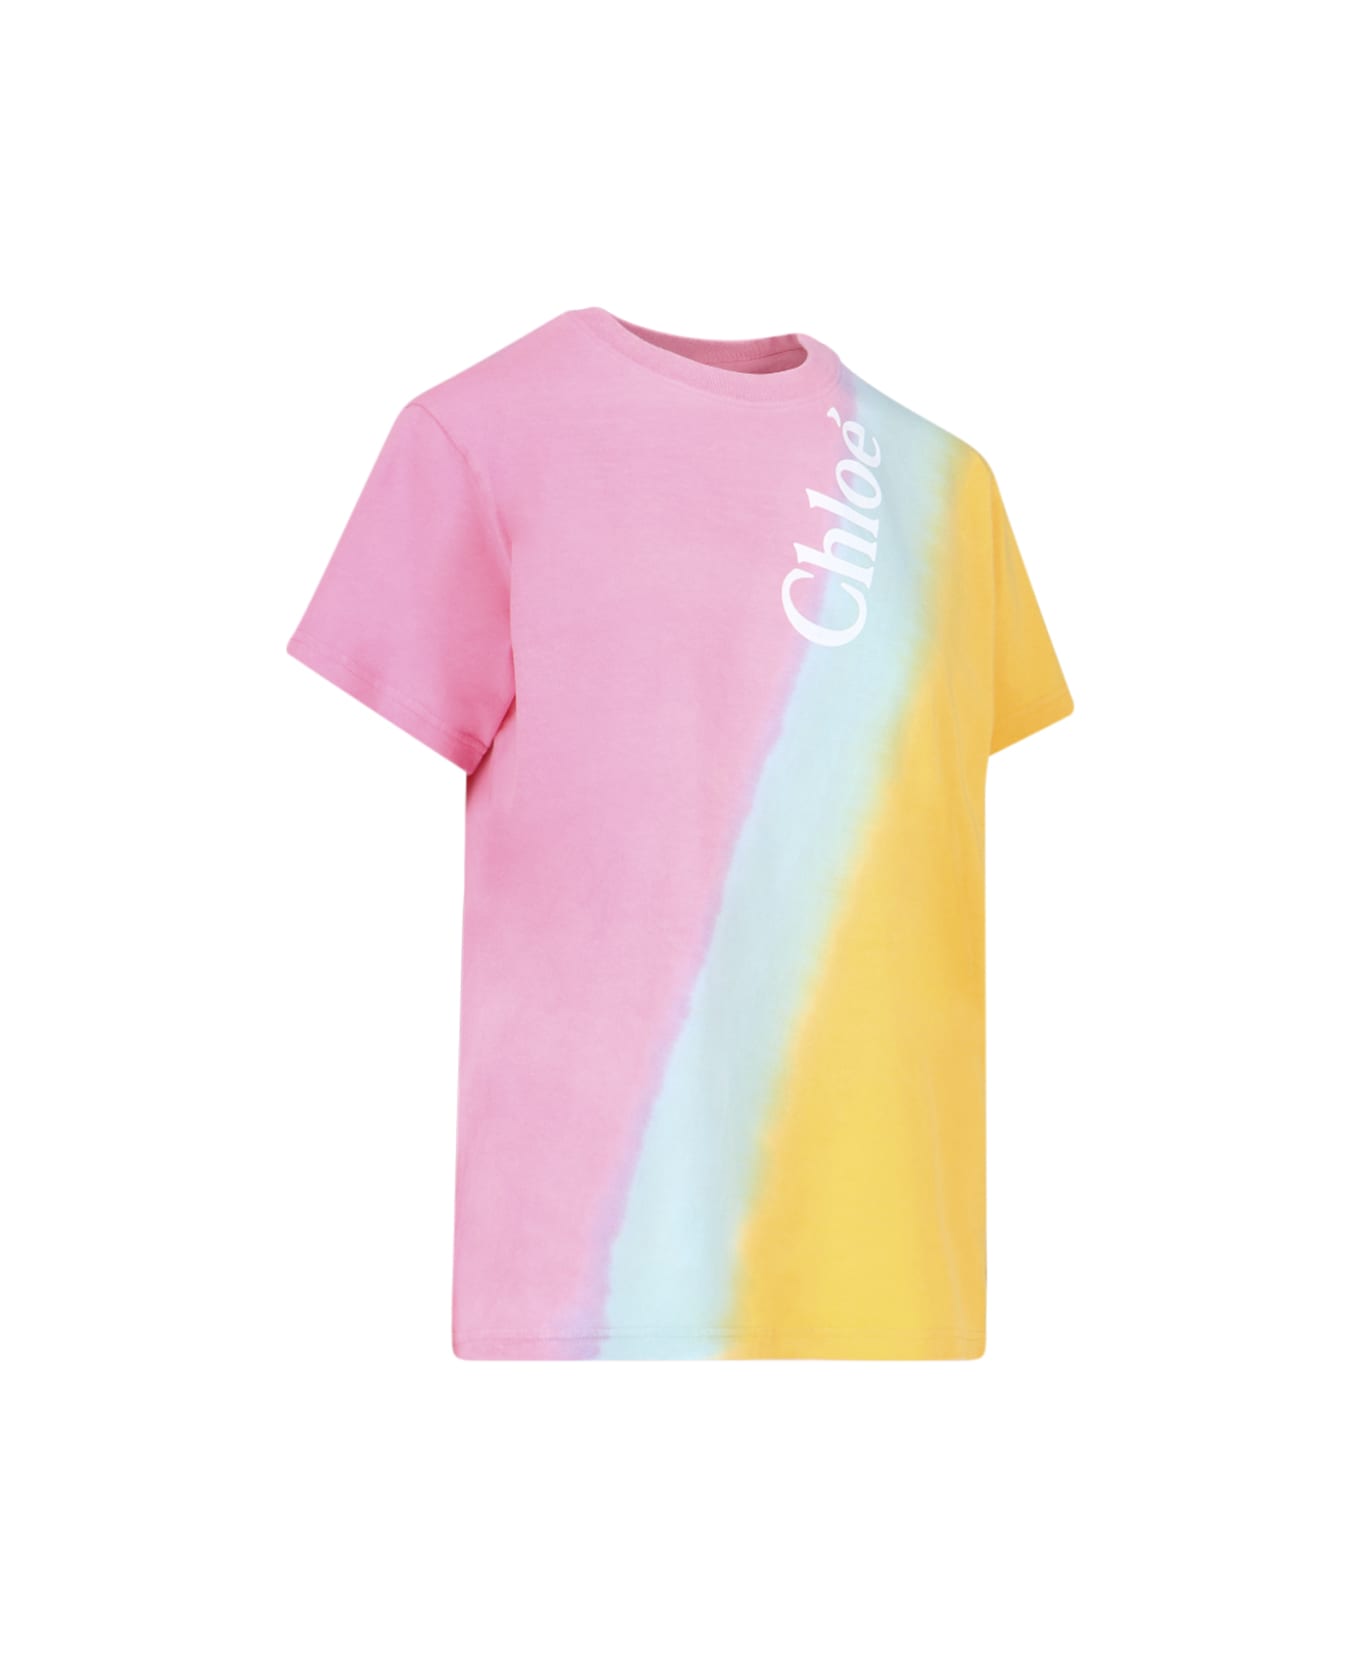 Chloé Chloè Cotton Logo T-shirt - Multicolor Tシャツ